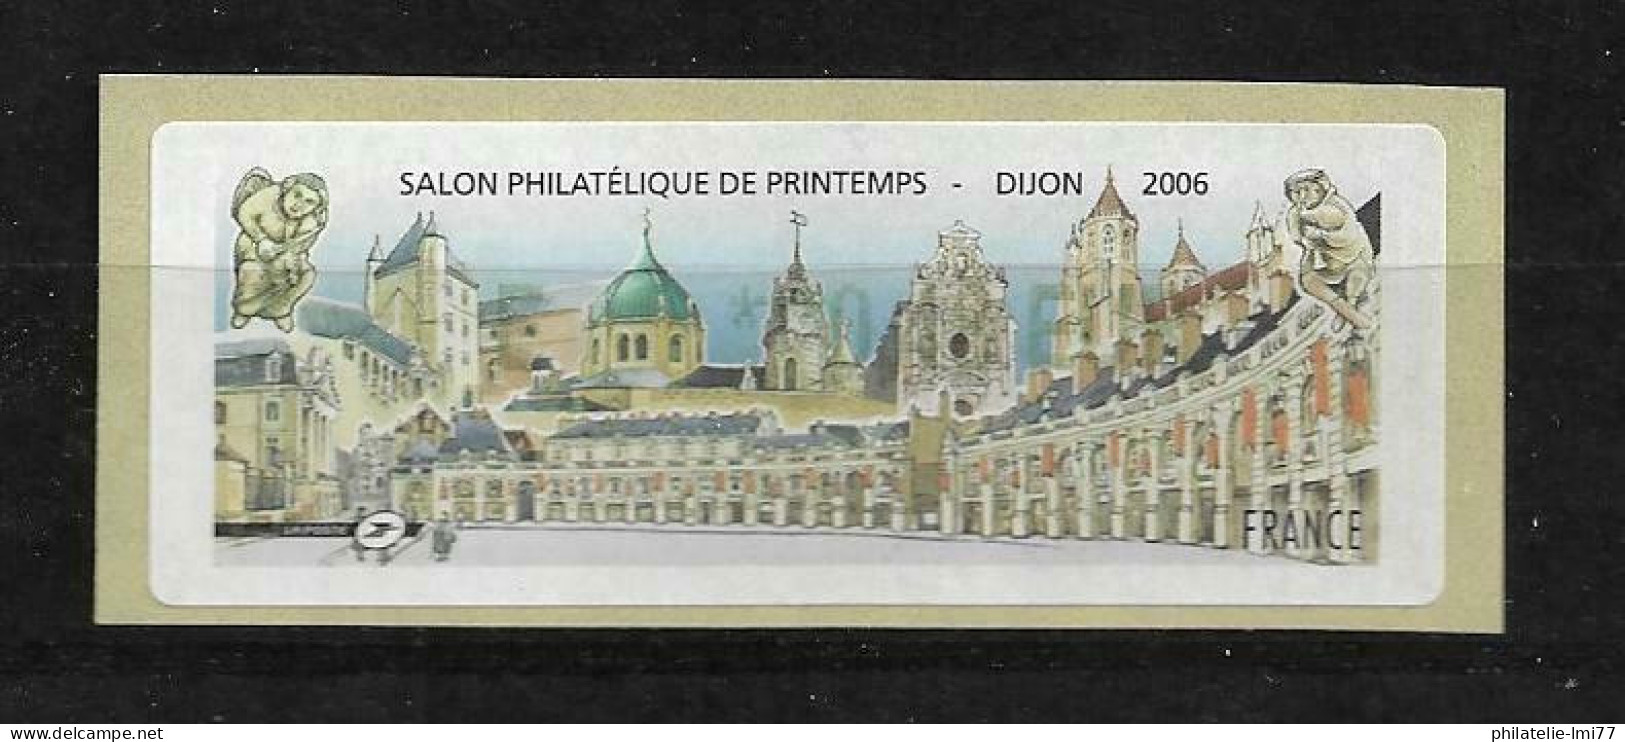 LISA 0,48 € - Salon Philatélique De Printemps - Dijon 2006 - 1999-2009 Vignette Illustrate